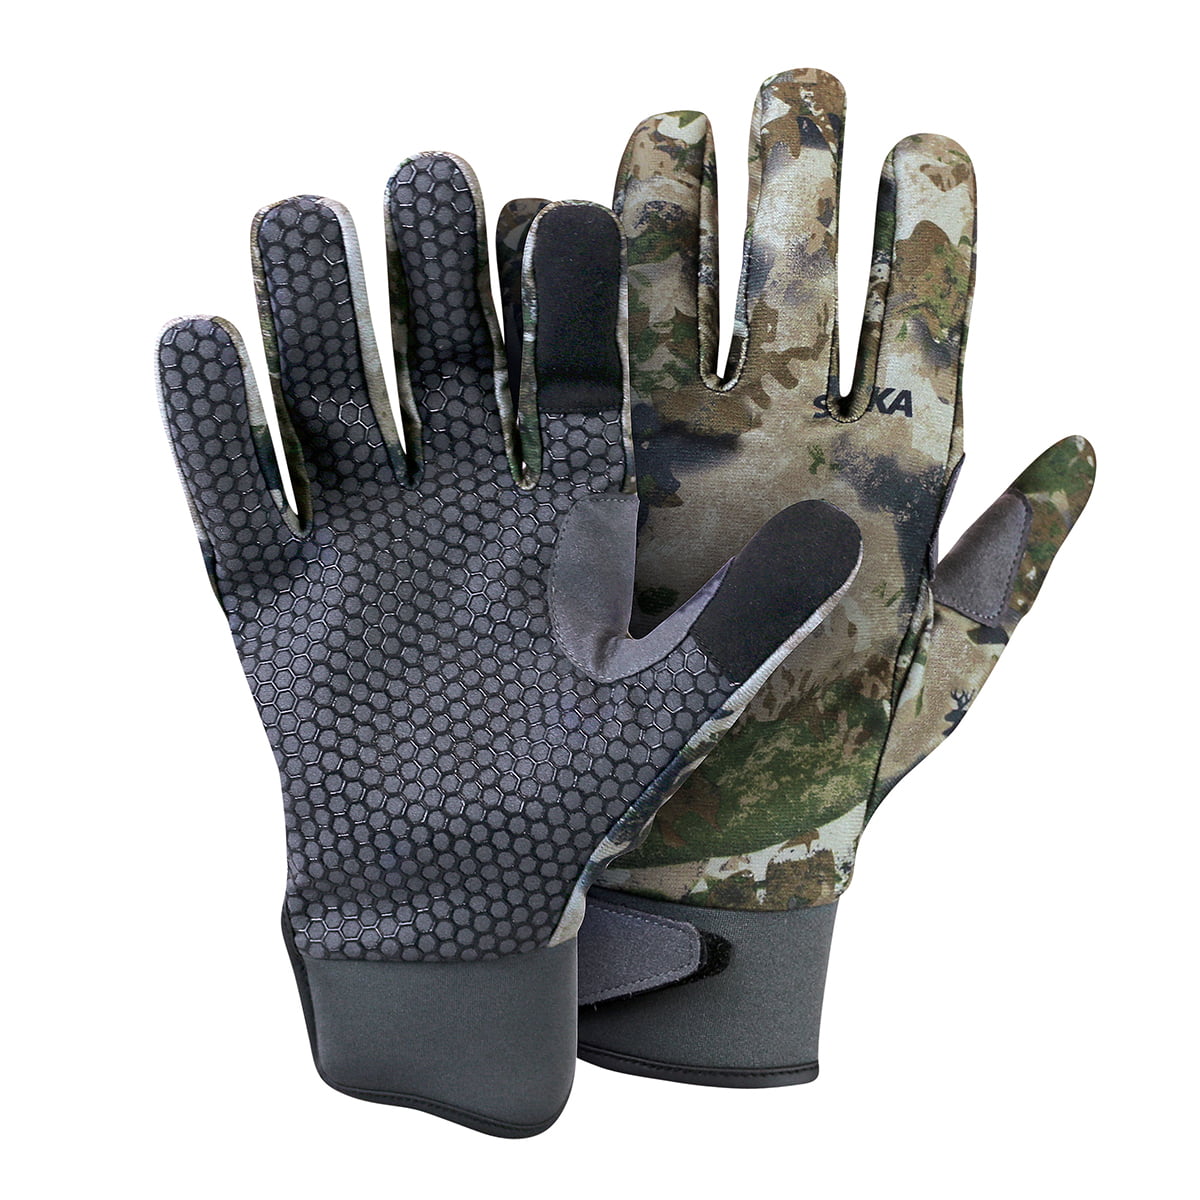 Spika Ranger Gloves